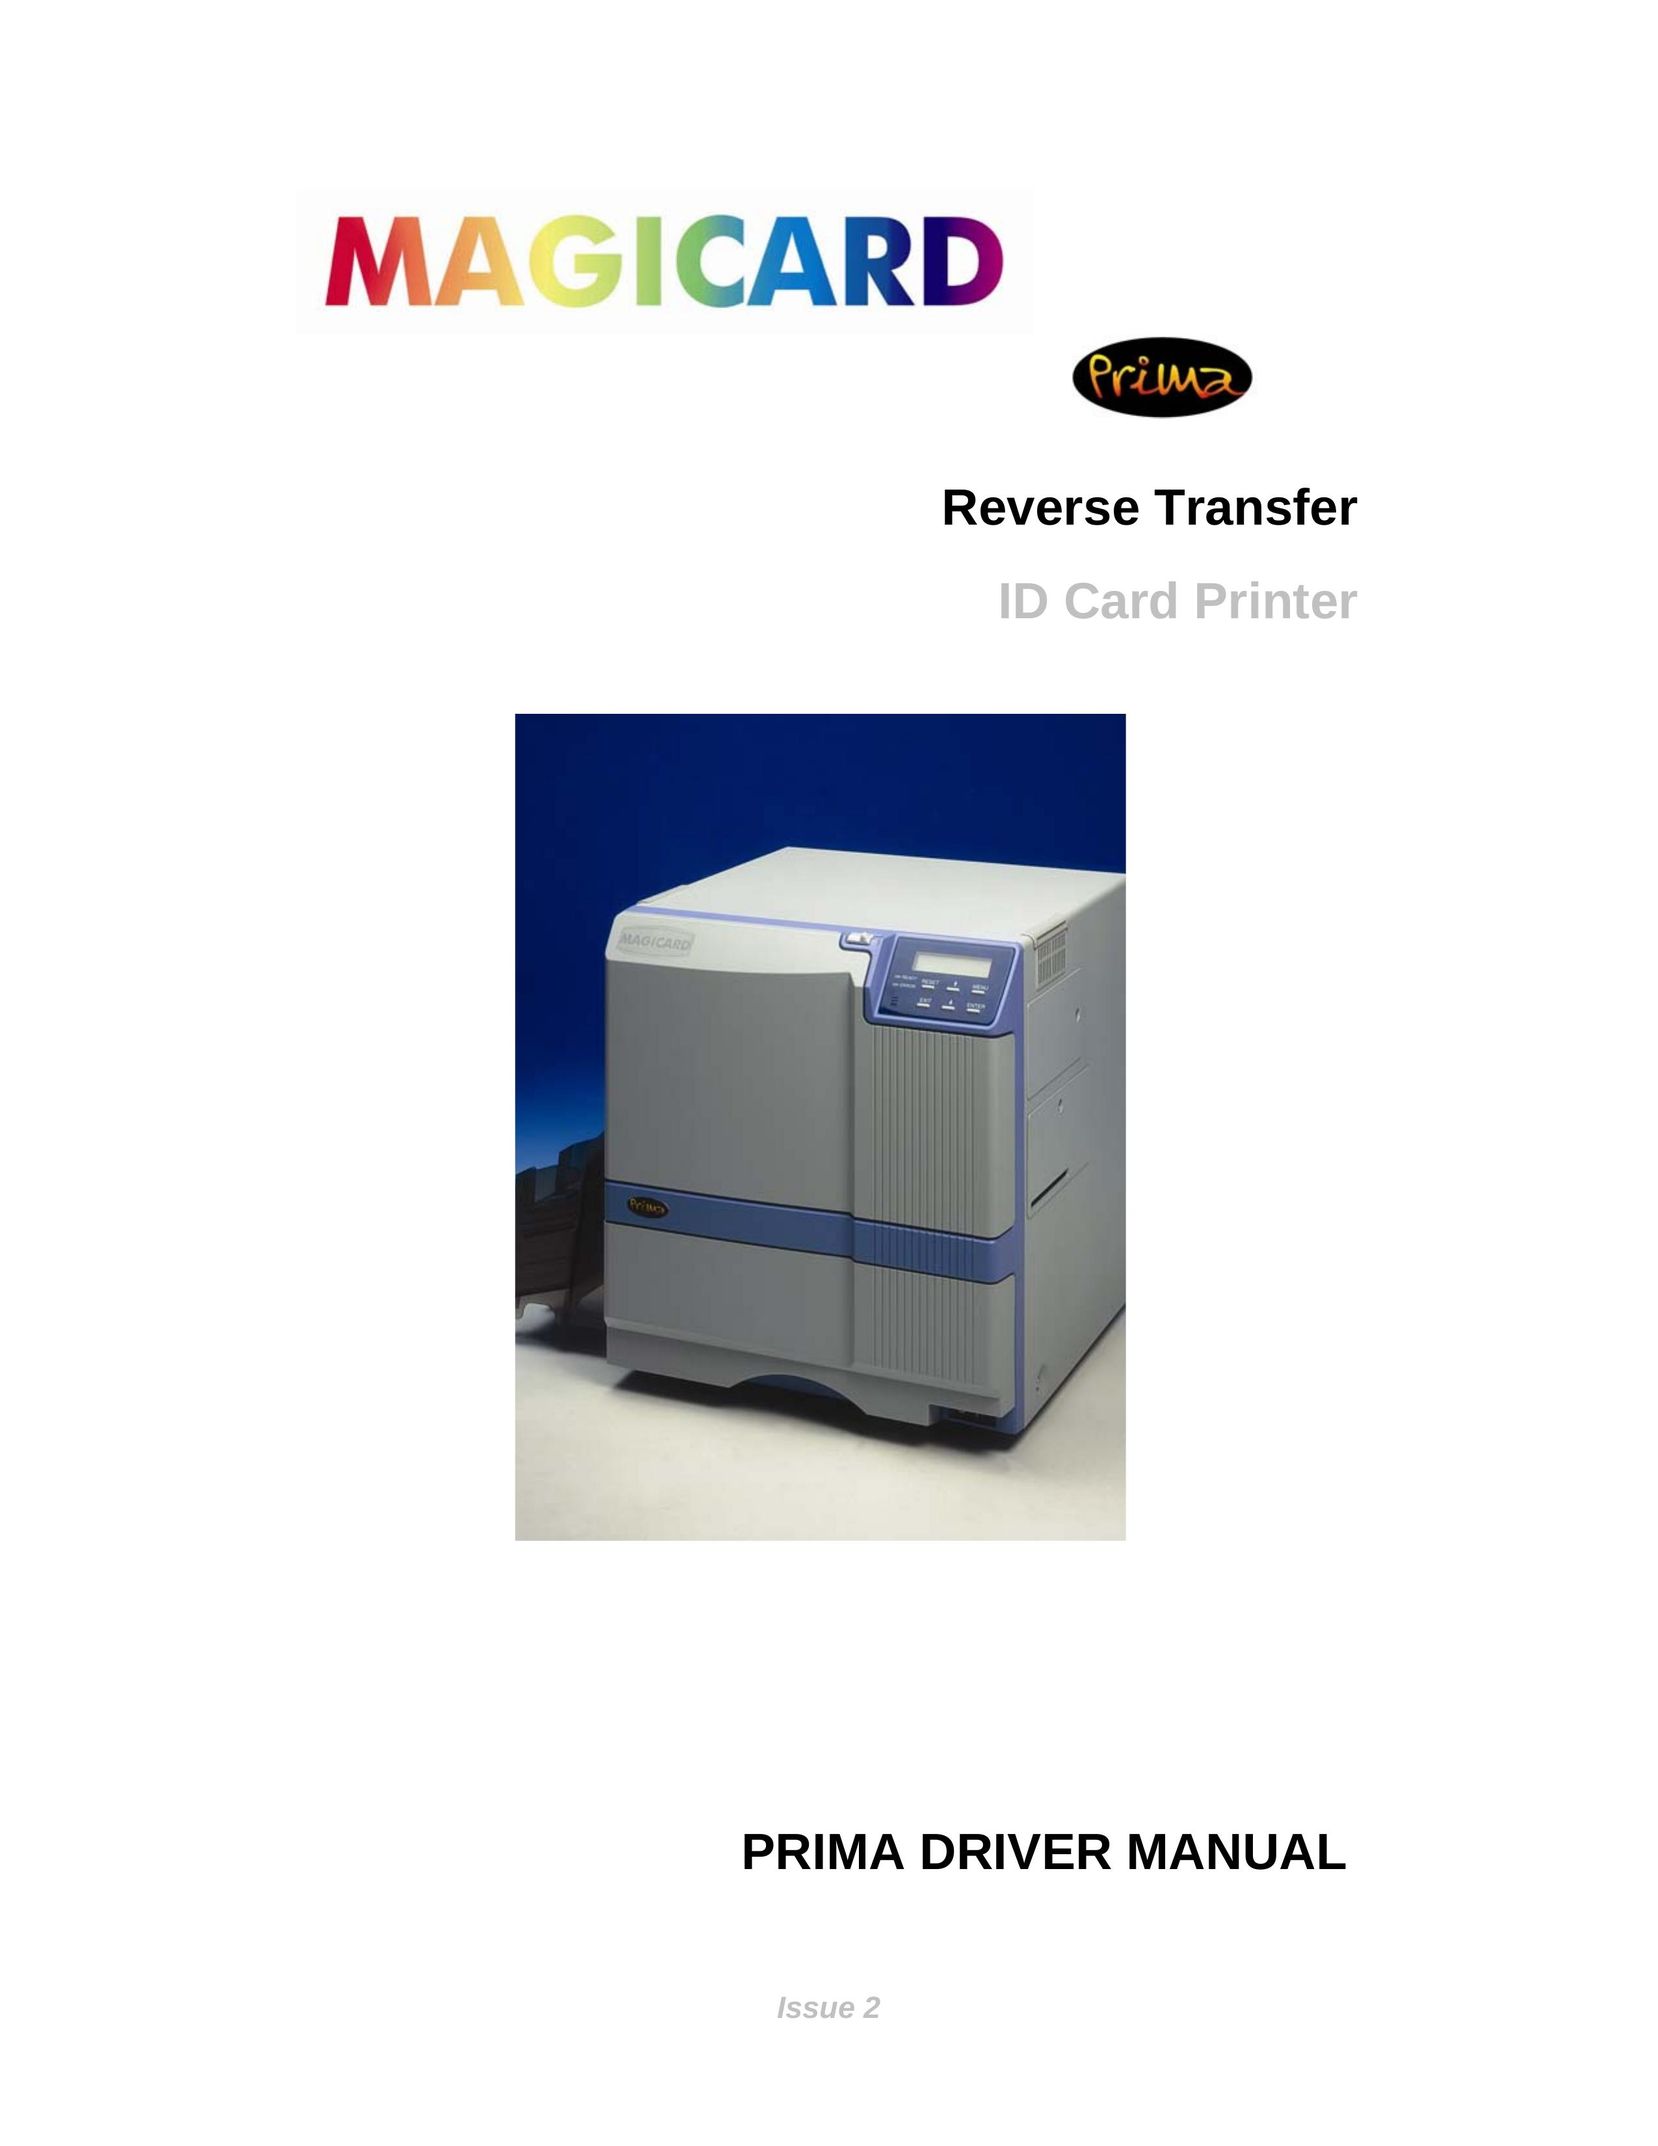 Prima ID Card Printer Printer User Manual